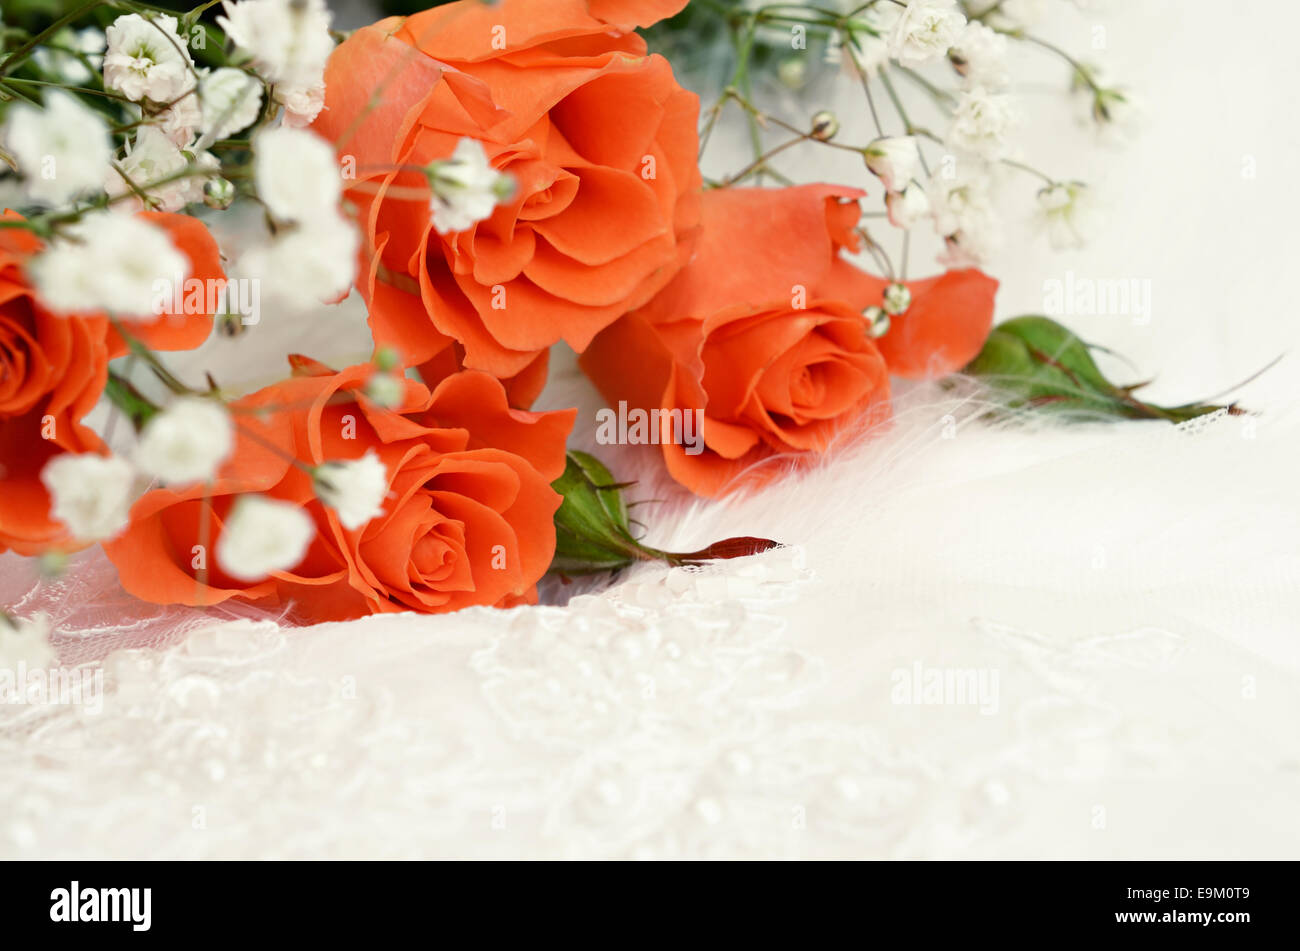 Bạn đang tìm kiếm một bức ảnh hoa hồng cam trên nền trắng để trang trí cho đám cưới của mình? Đừng lo lắng nữa vì Alamy đã có tất cả những gì bạn cần! Click vào đây để chiêm ngưỡng ngay bức ảnh độc đáo này và biết thêm thông tin chi tiết.